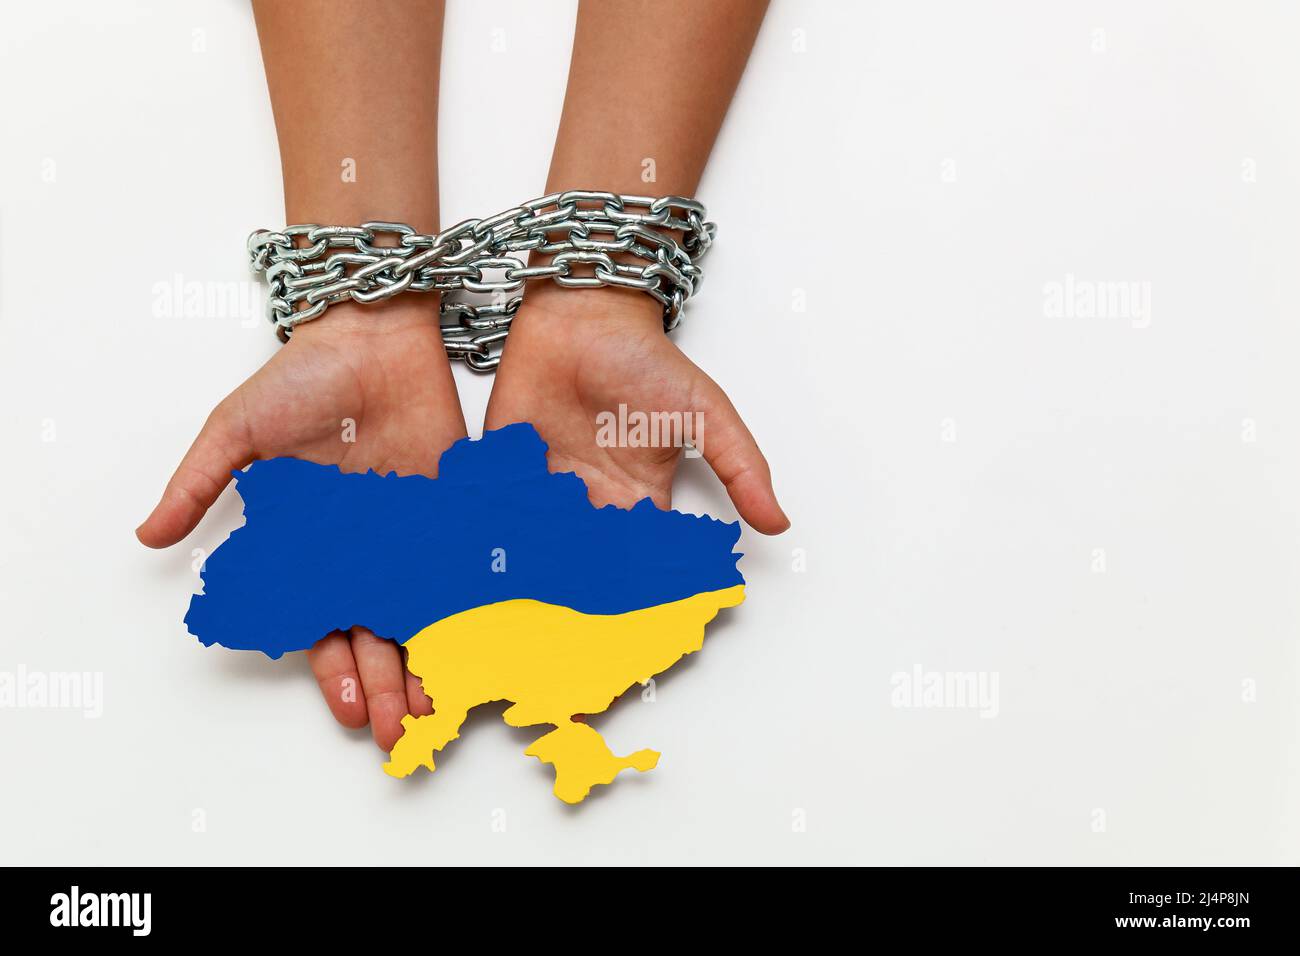 Las manos de las mujeres están atadas con una cadena y sostienen un mapa de Ucrania pintado de azul y amarillo sobre un fondo blanco. Quitar la libertad y la independencia. Foto de stock